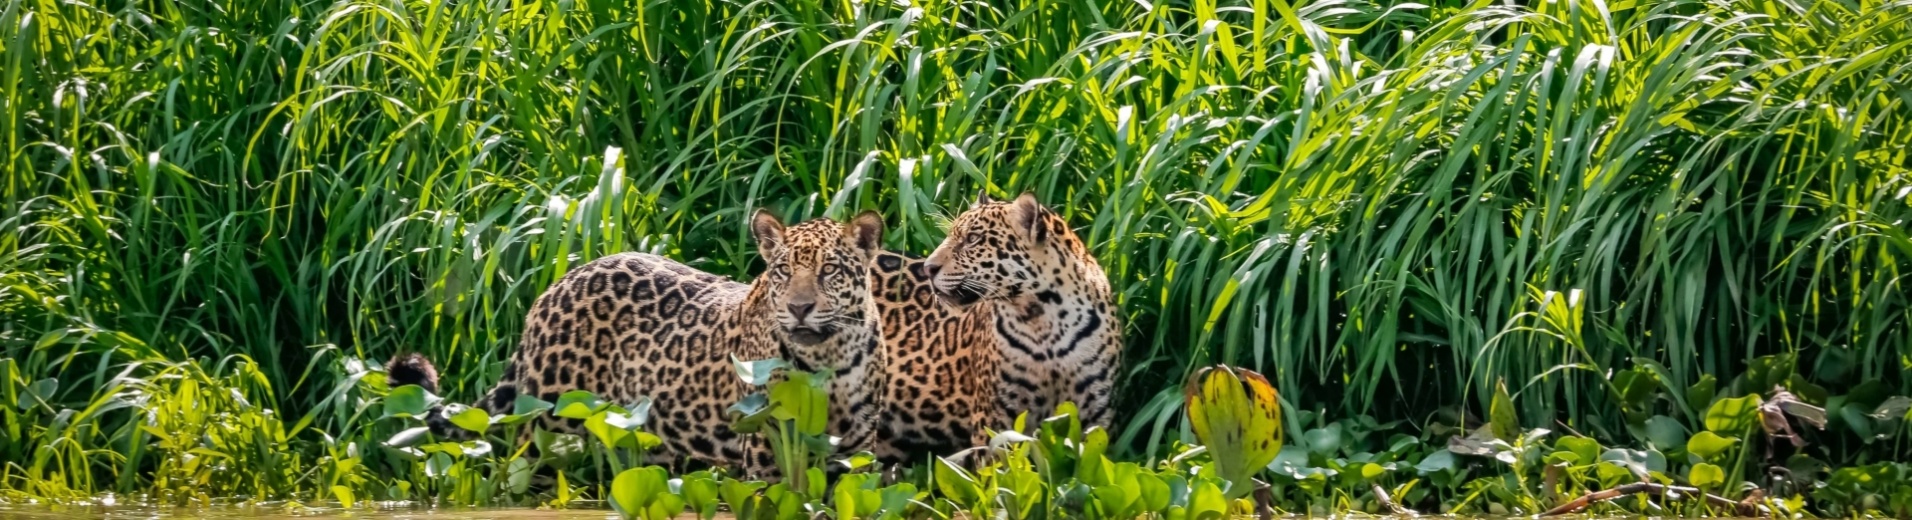 Jaguars du Pantanal au Brésil